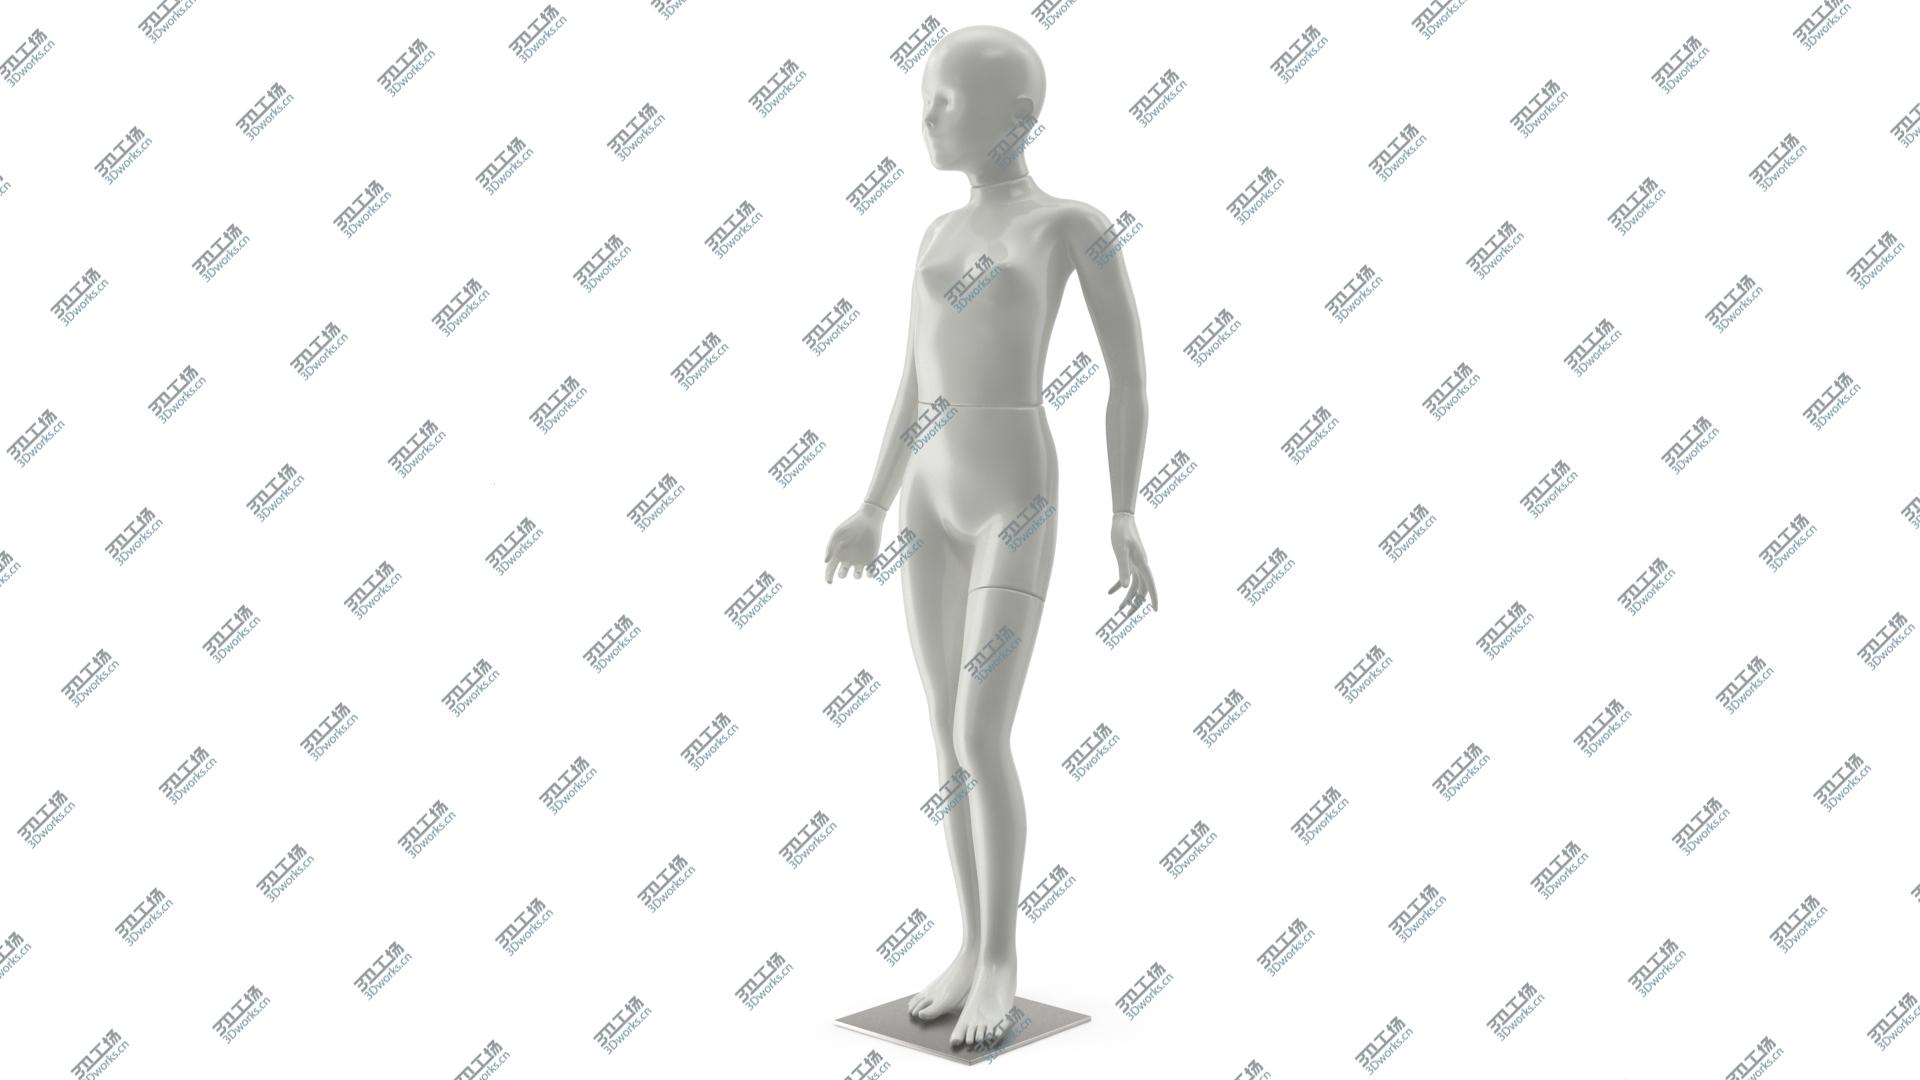 images/goods_img/2021040162/Girl Mannequin 3D model/4.jpg